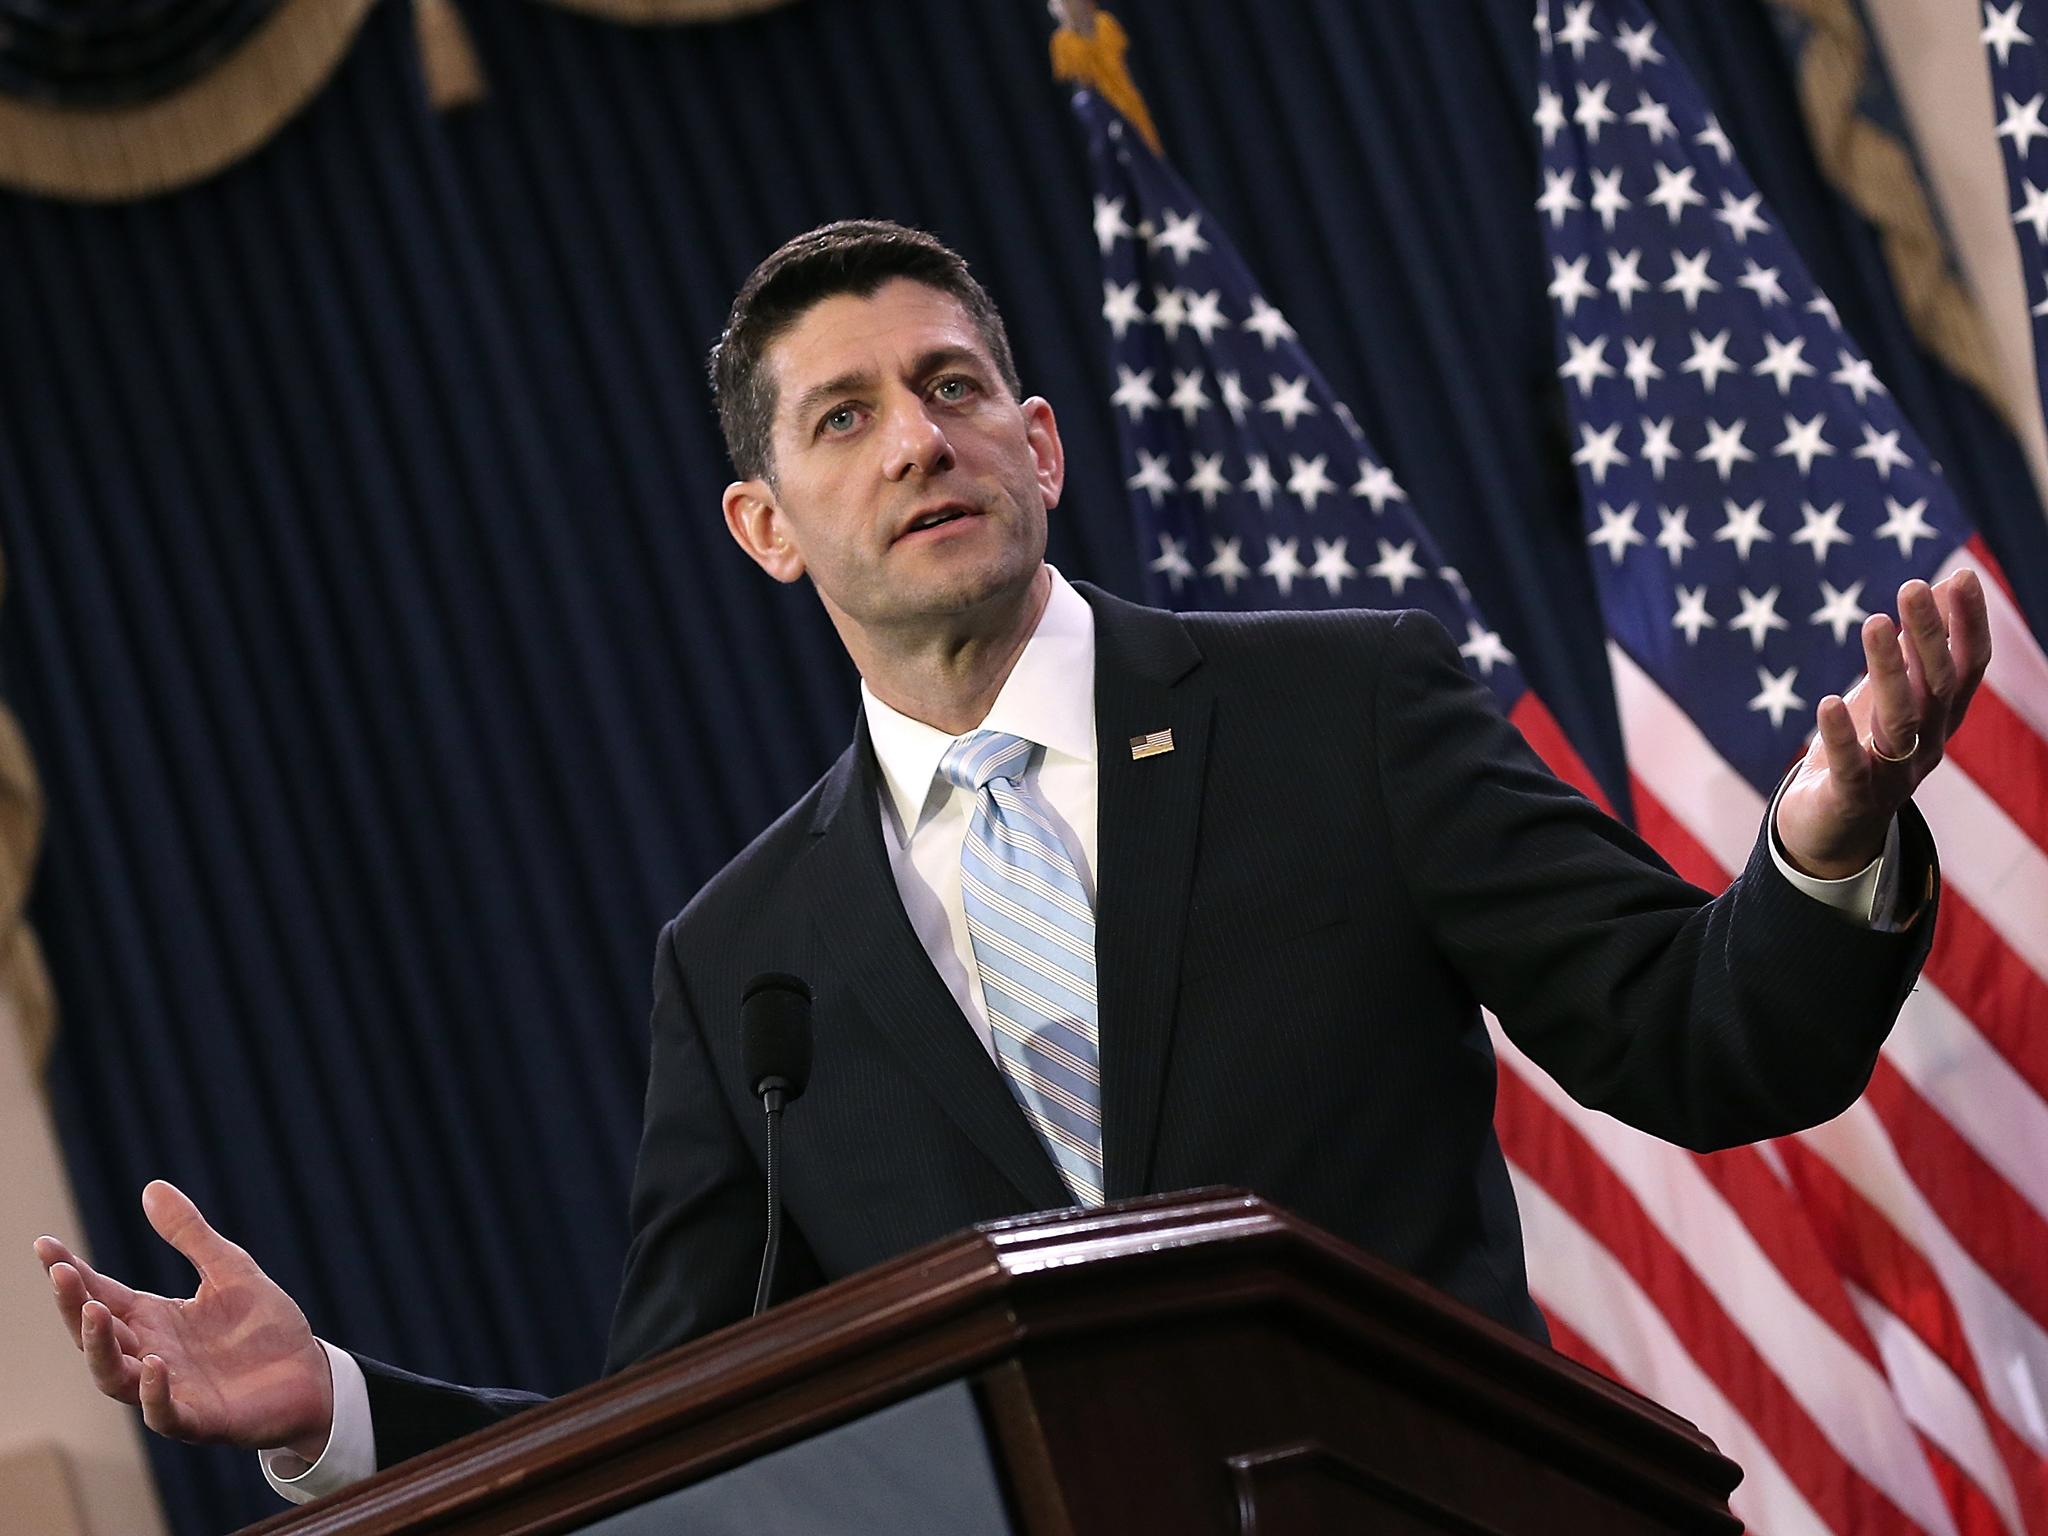 Speaker of the House, Paul Ryan